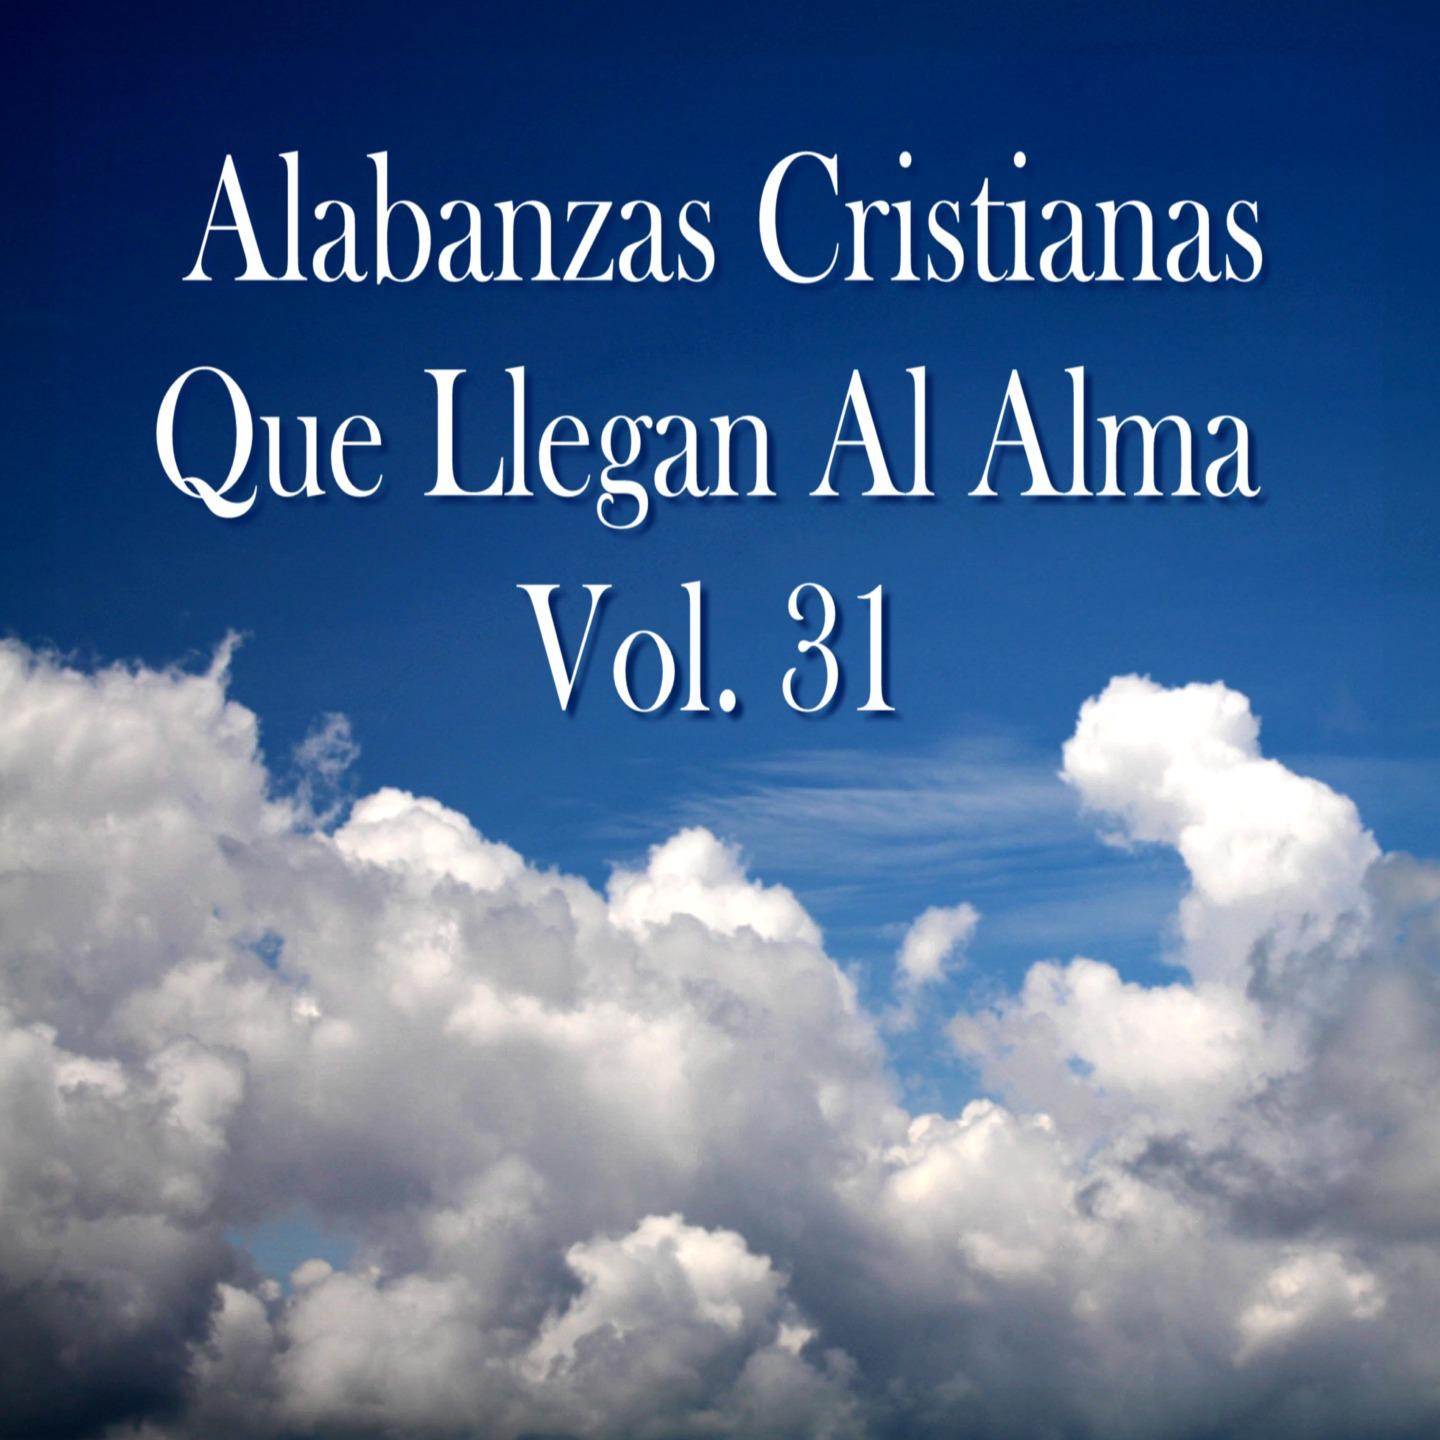 Alabanzas Cristianas Que Llegan al Alma, Vol. 31